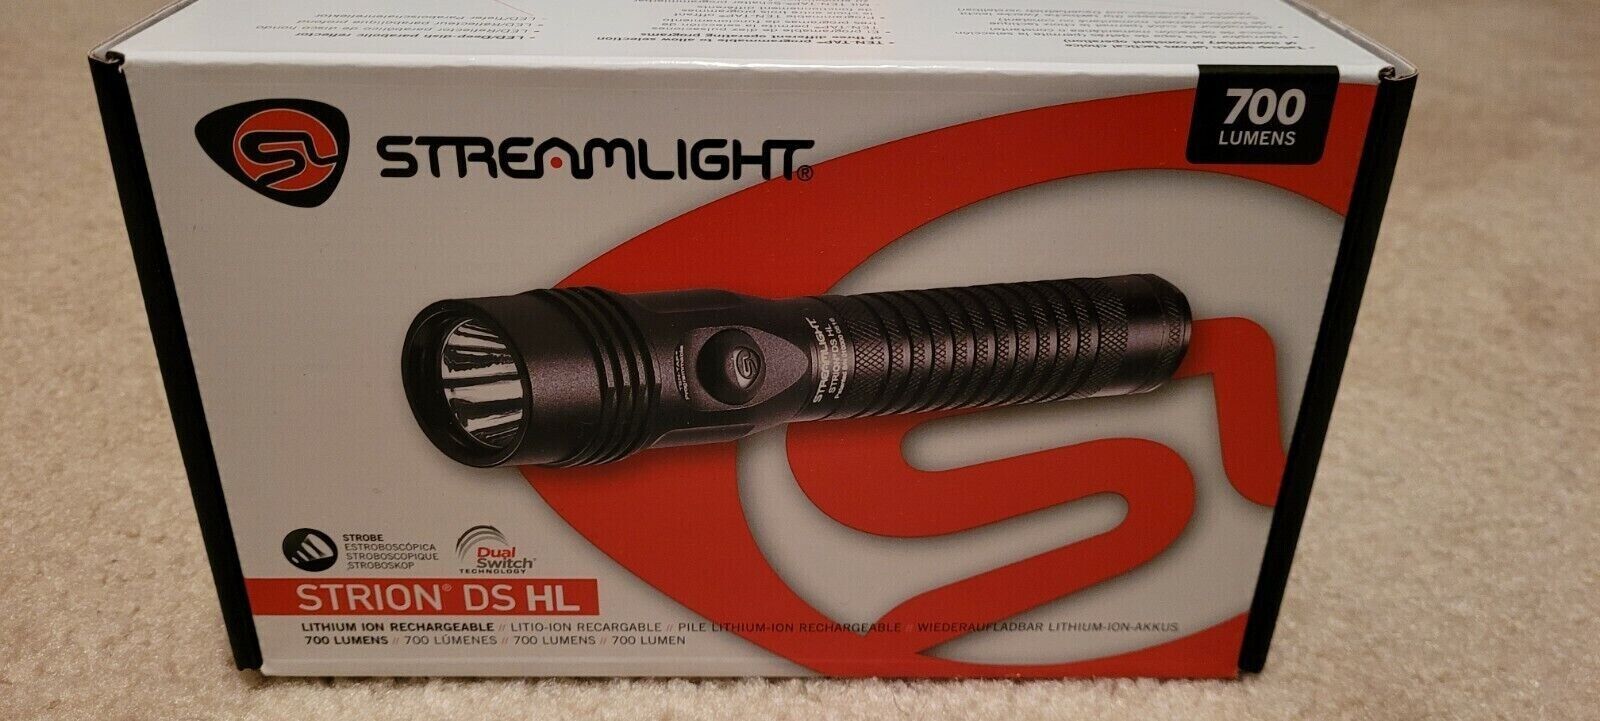 Streamlight 74611 700 Lumens Holder Flash Light